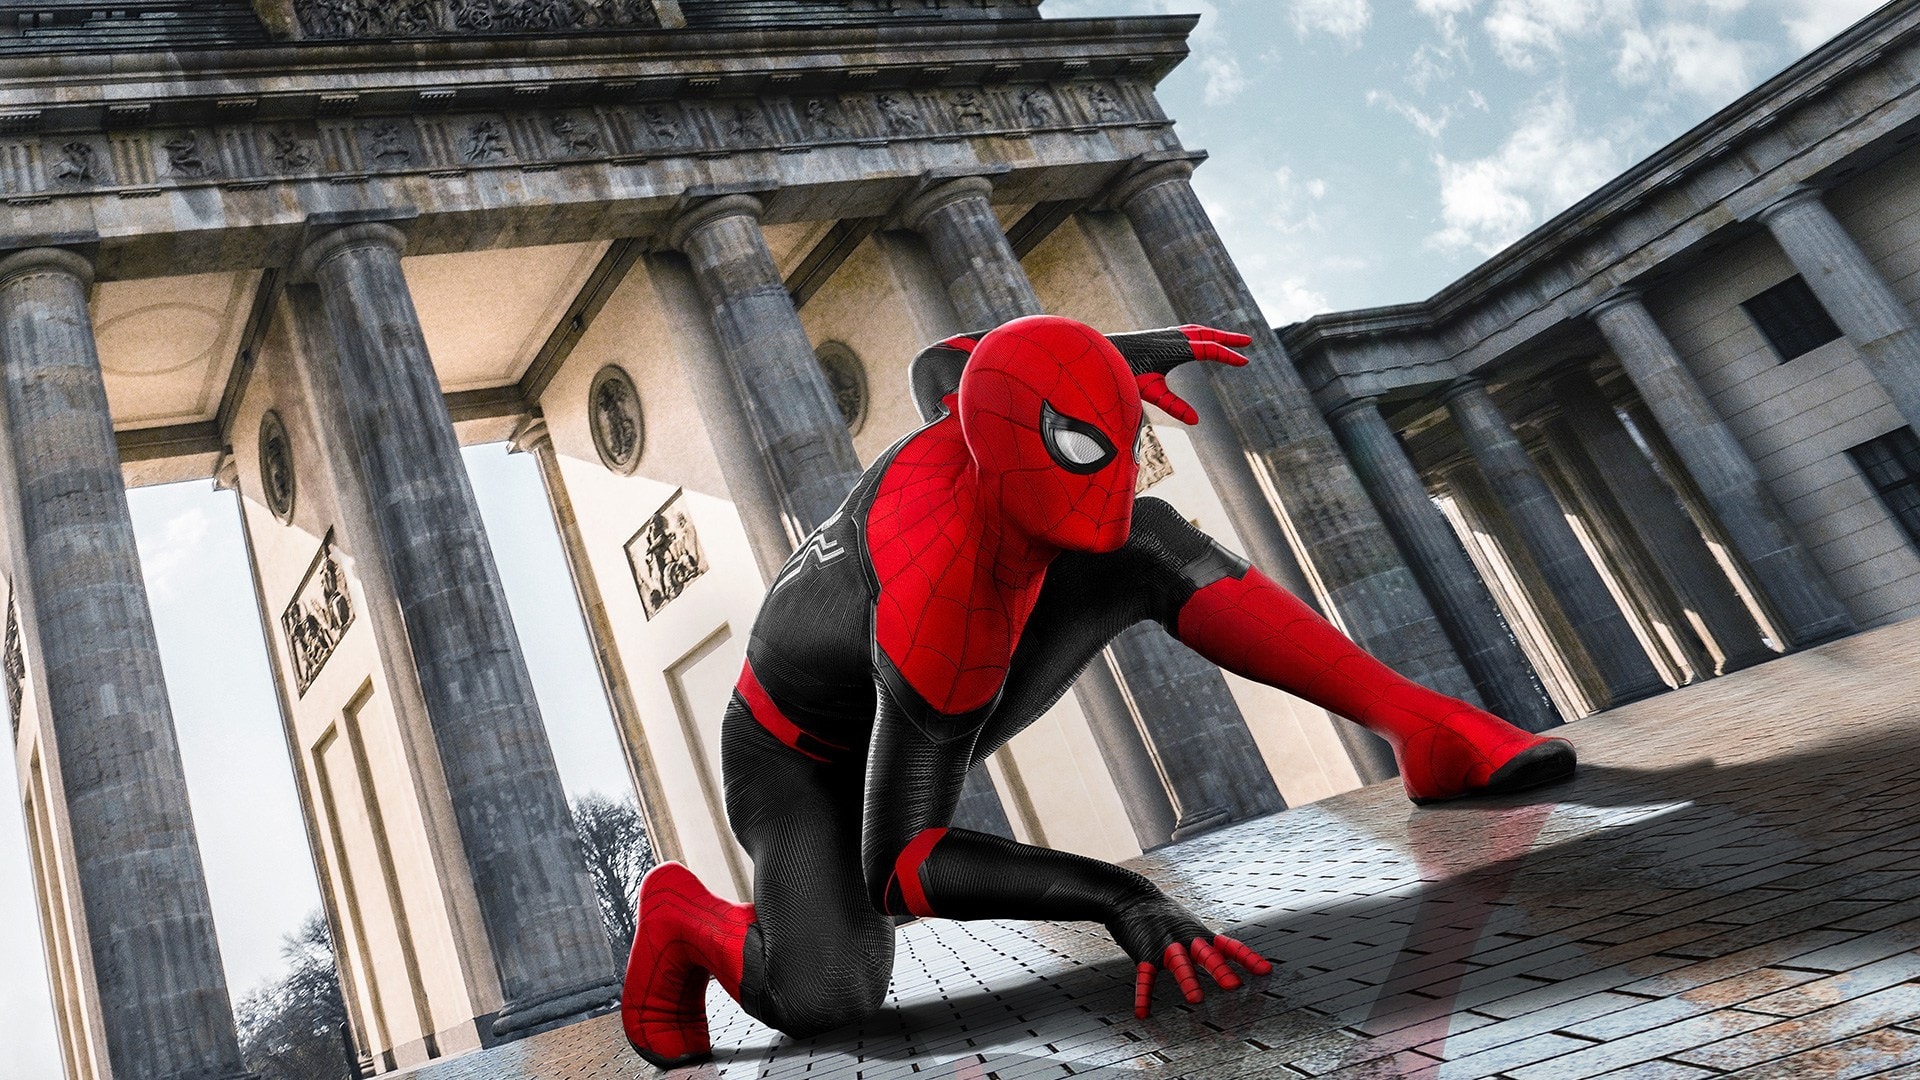 Nädala parim film: ostke “Spider-Man: Away from Home” koos Tom Hollandi ja Jake Gyllenhaaliga 9,90 R $ eest!